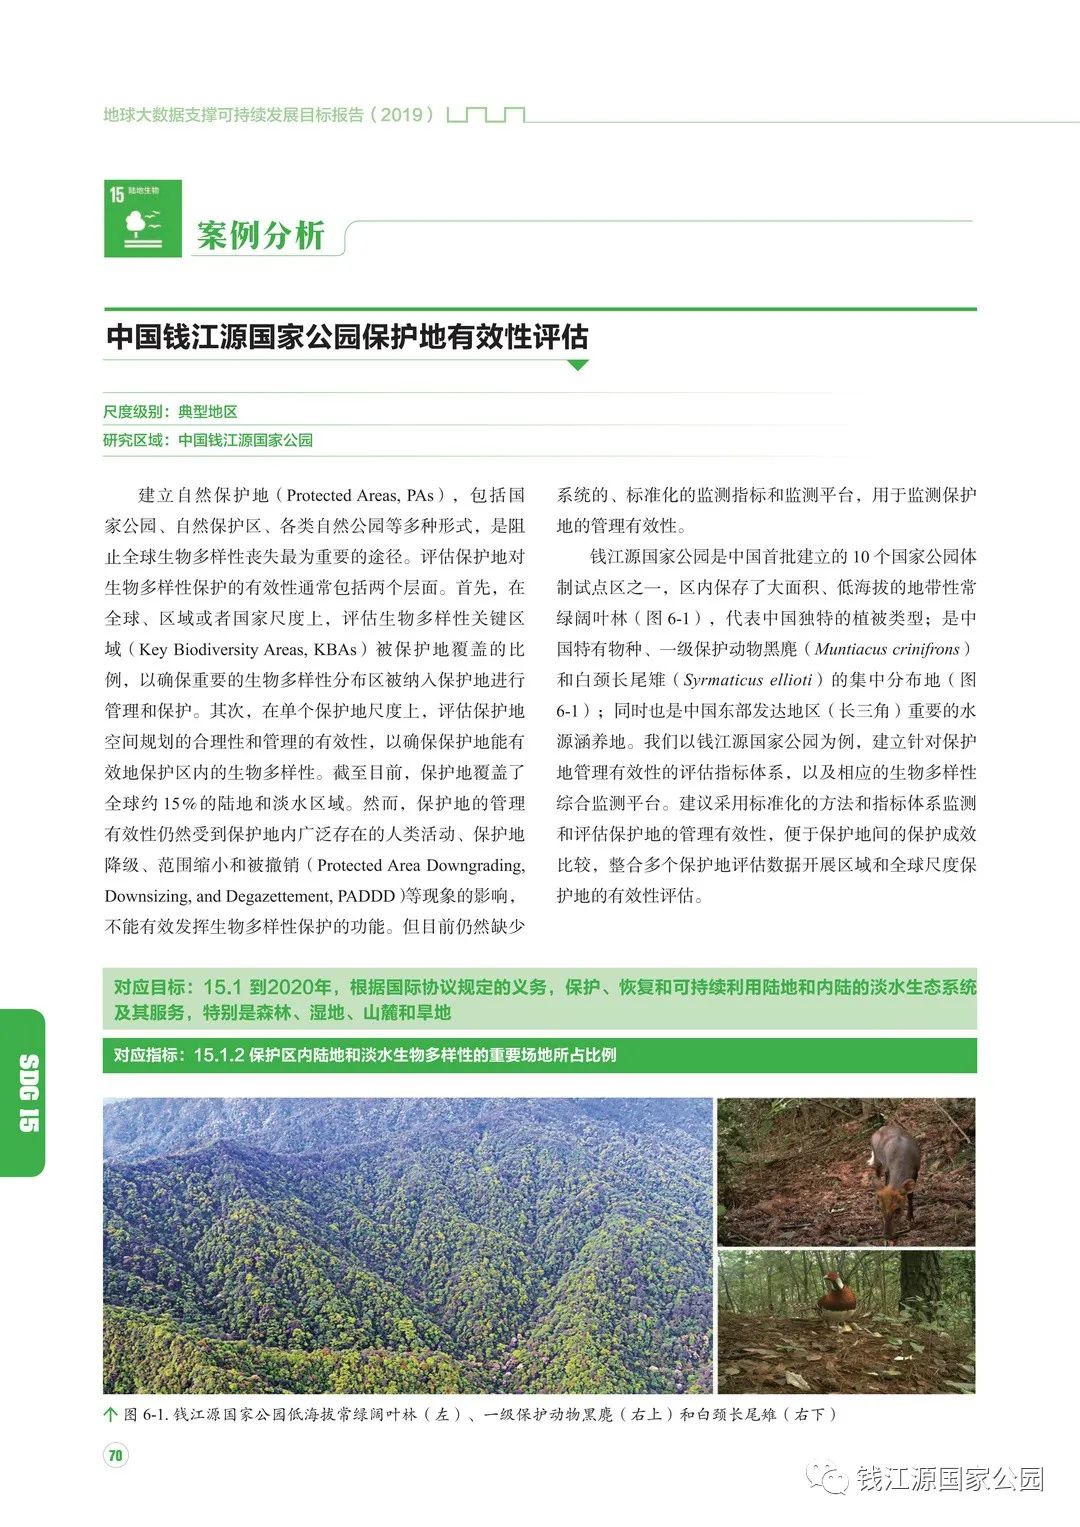 浙江钱江源森林生物多样性国家野外科学观测研究站获科技部正式批准